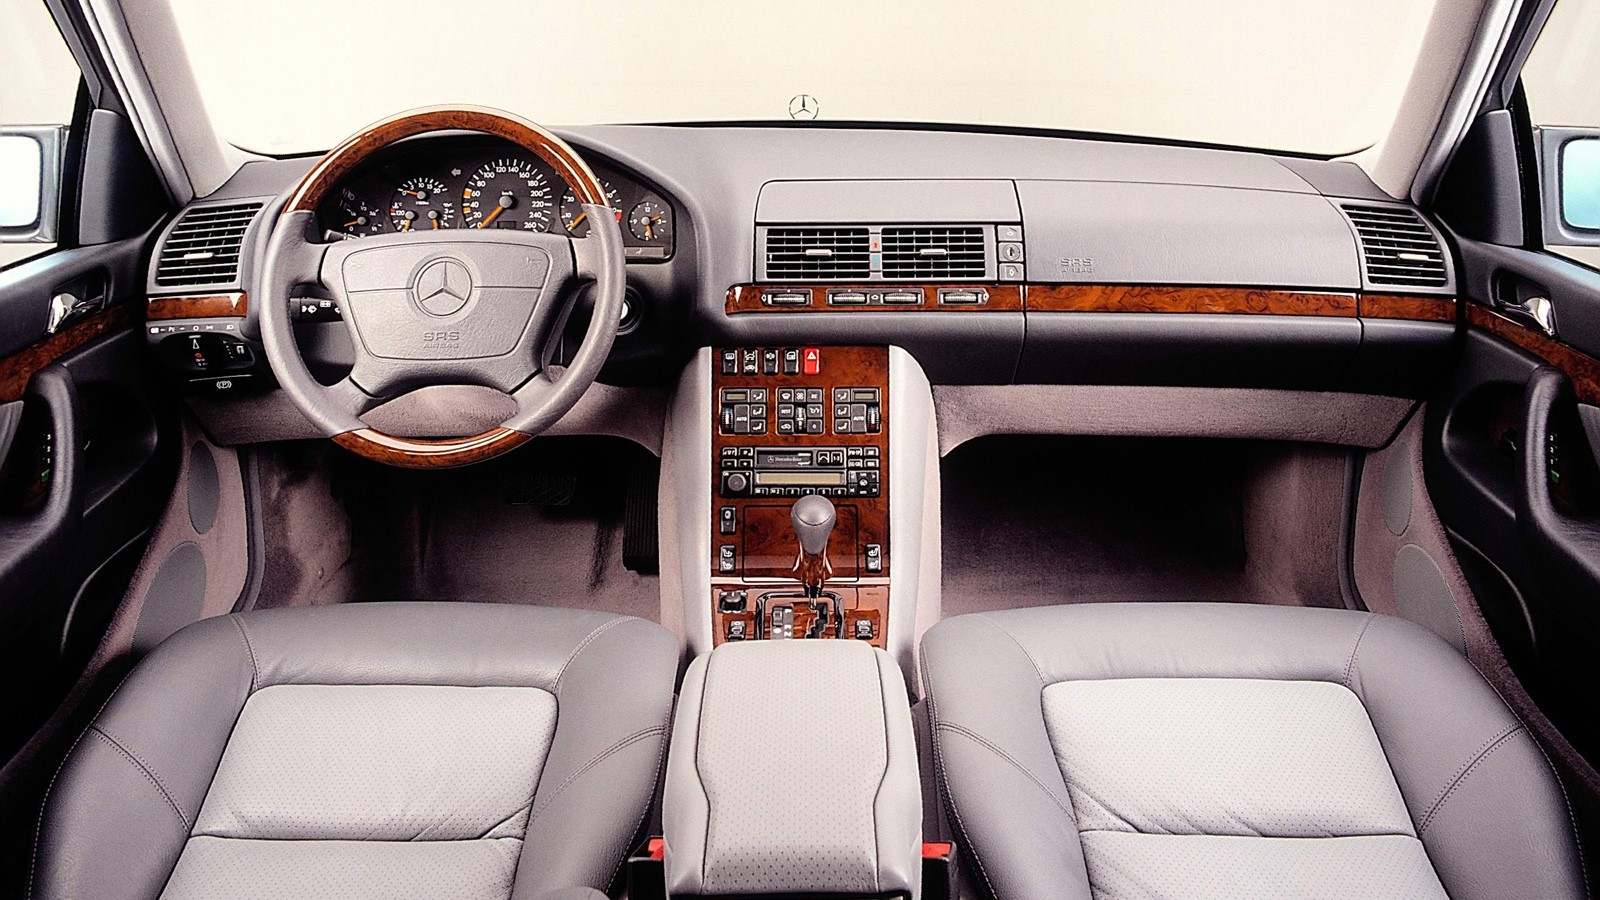 Овер-инжиниринг: выбираем Mercedes-Benz S-Class W140 c пробегом - – автомобильный журнал